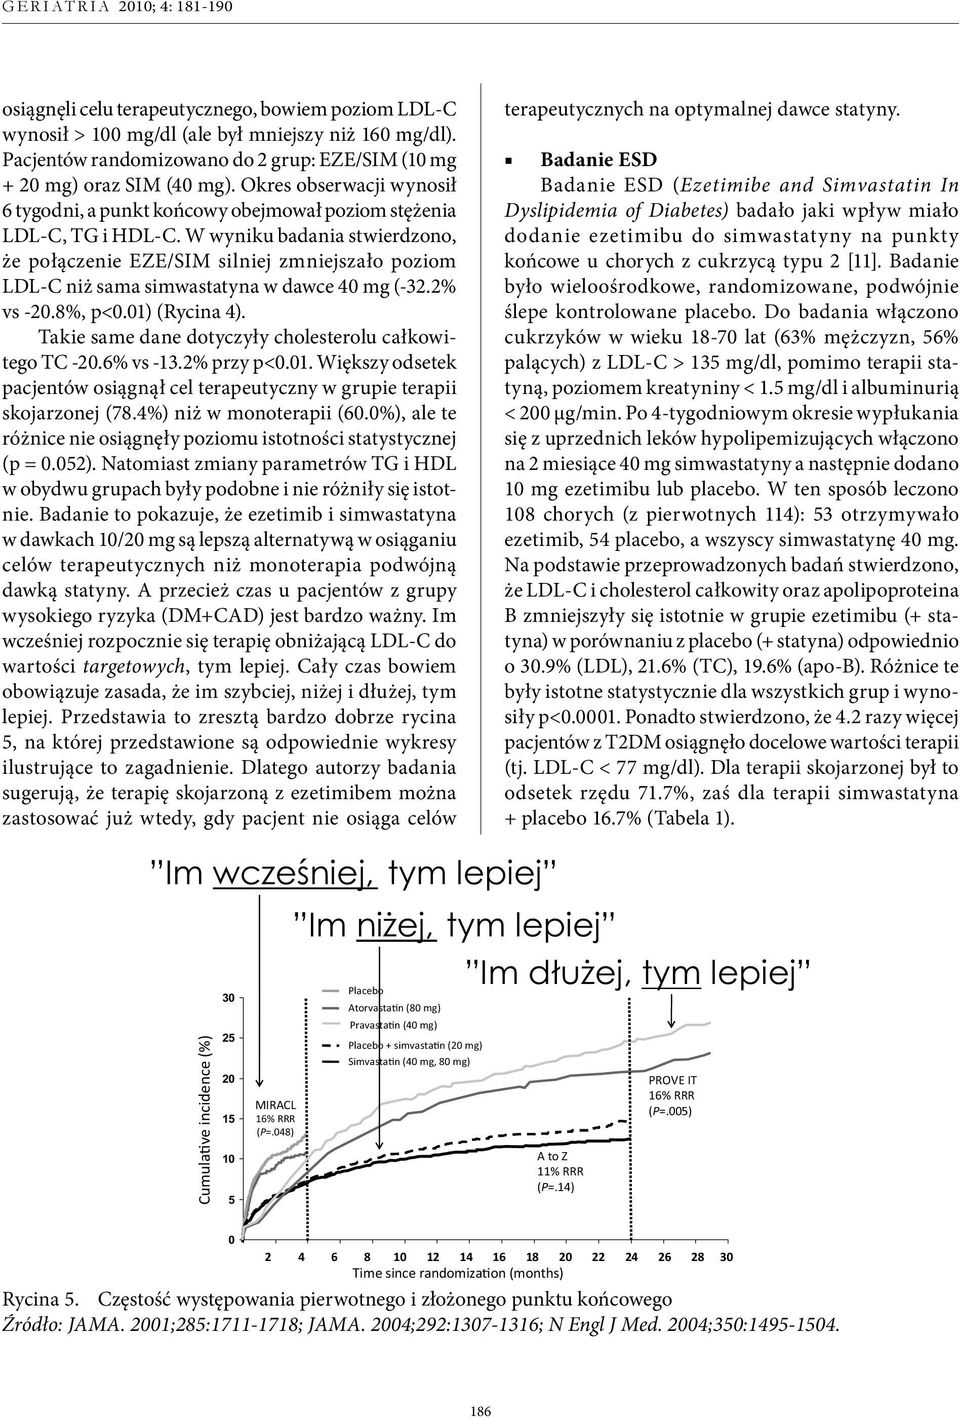 W wyniku badania stwierdzono, że połączenie EZE/SIM silniej zmniejszało poziom LDL-C niż sama simwastatyna w dawce 40 mg (-32.2% vs -20.8%, p<0.01) (Rycina 4).